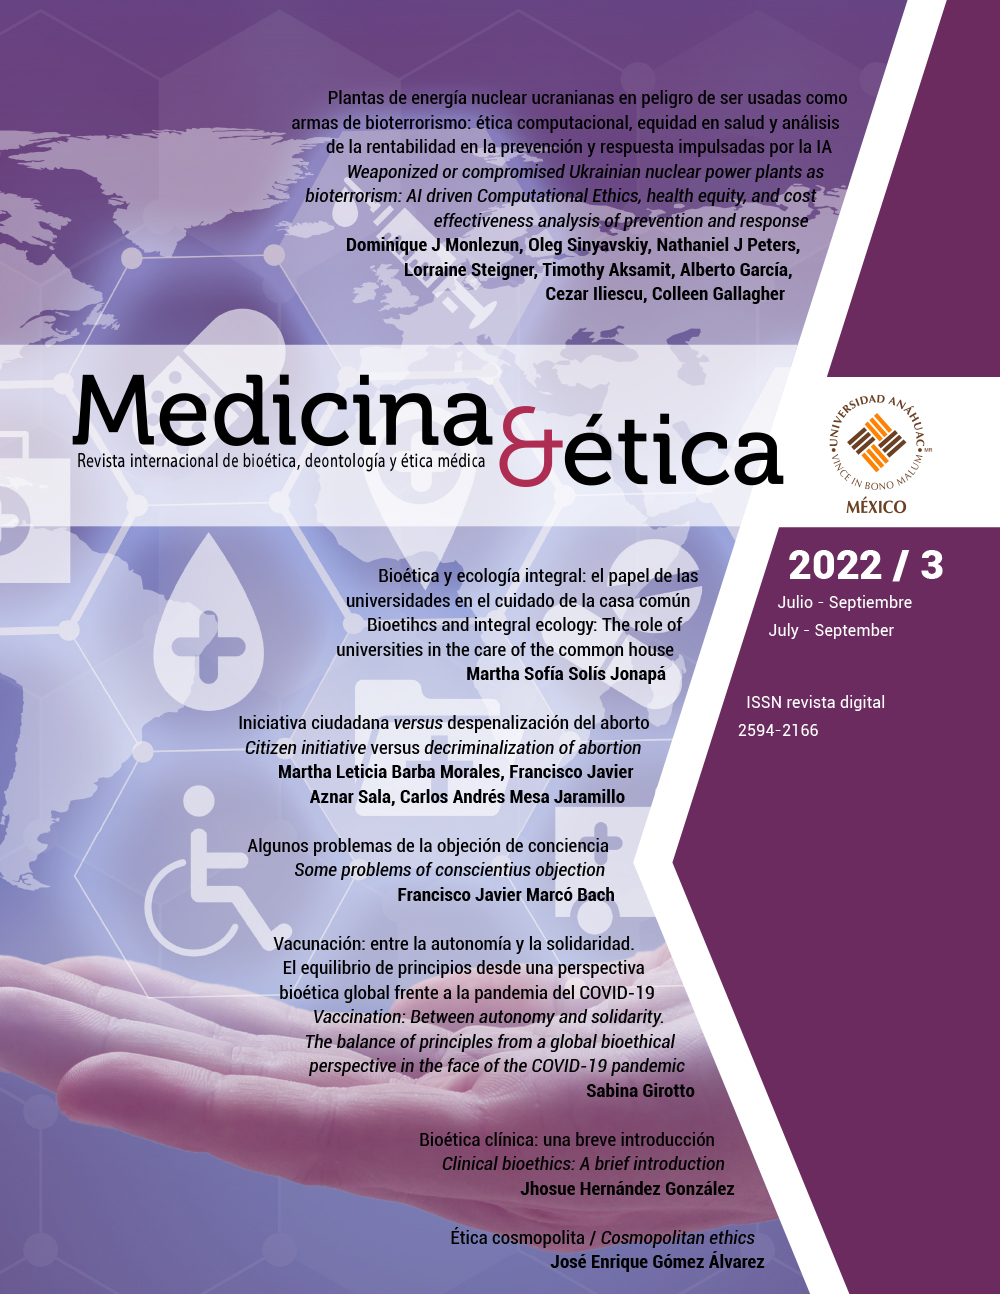 Presentamos el más reciente número de la revista Medicina y Ética